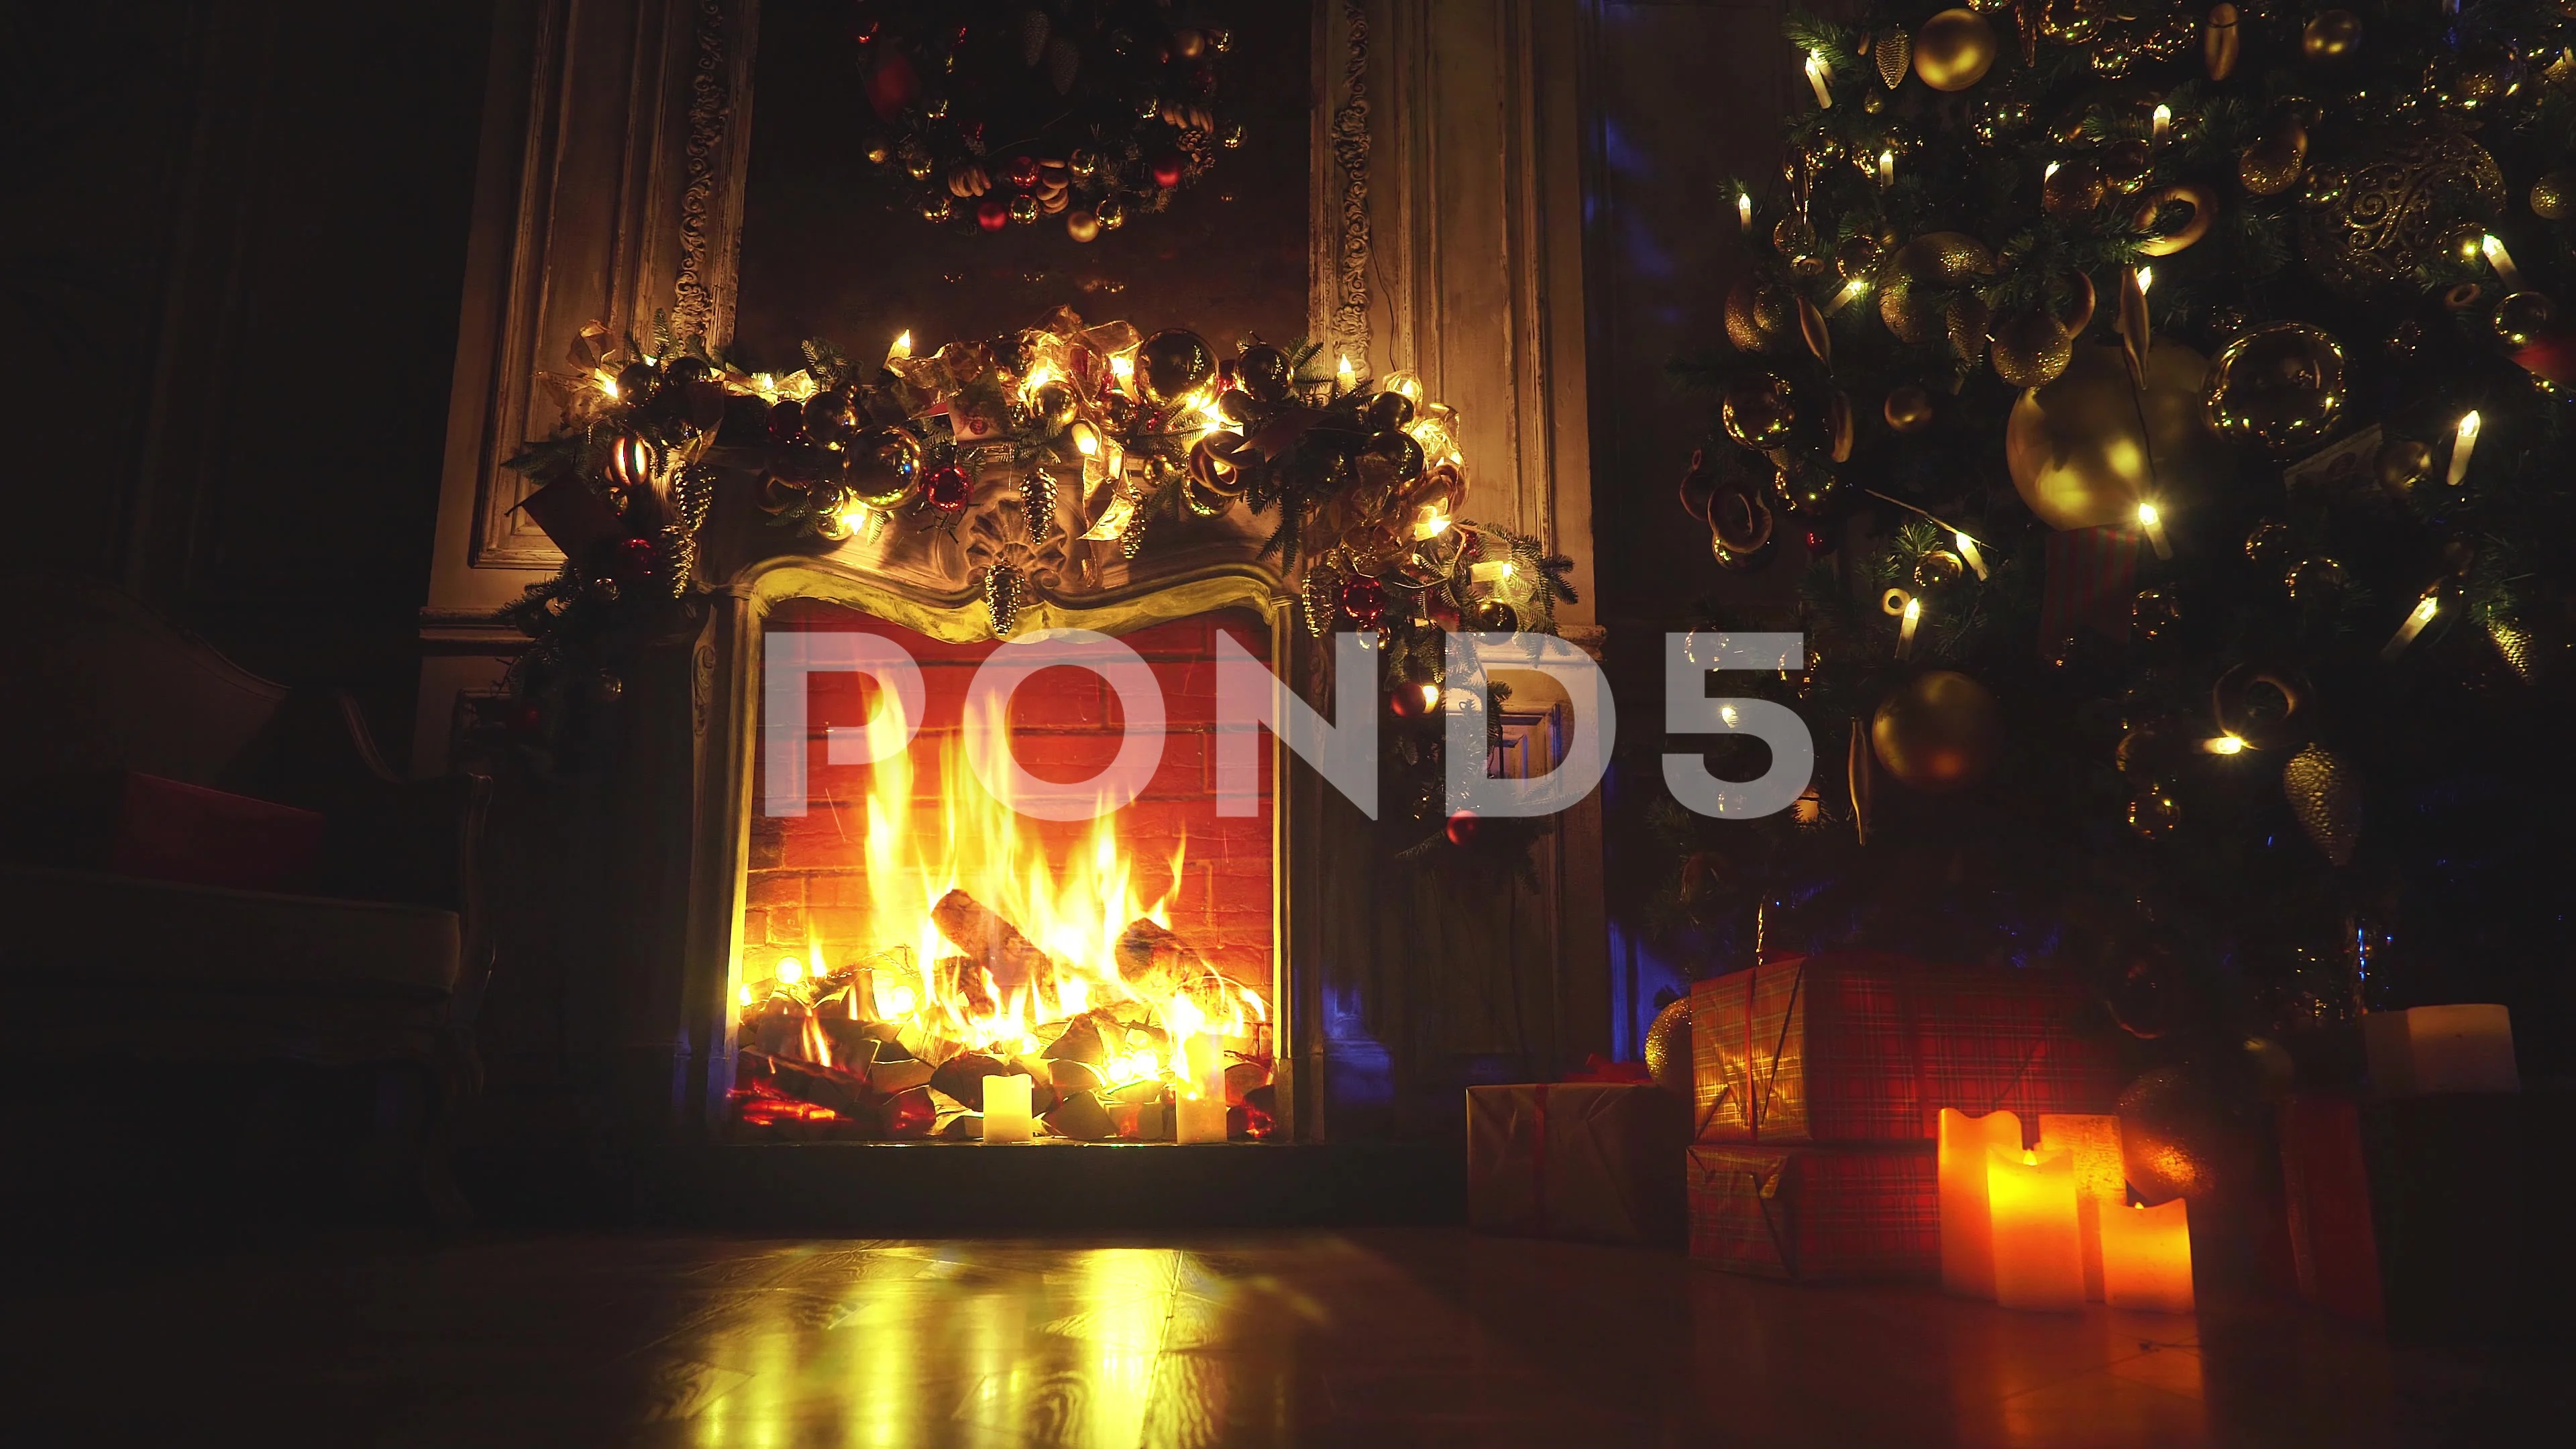 Mùa Giáng Sinh sắp đến rồi! Hãy cùng chiêm ngưỡng khoảnh khắc ấm áp của lửa đang rực cháy trên bếp lửa Giáng Sinh. Với hình ảnh lò sưởi Giáng Sinh, bạn sẽ cảm nhận được không khí lễ hội rộn ràng đang lan tỏa khắp nơi.